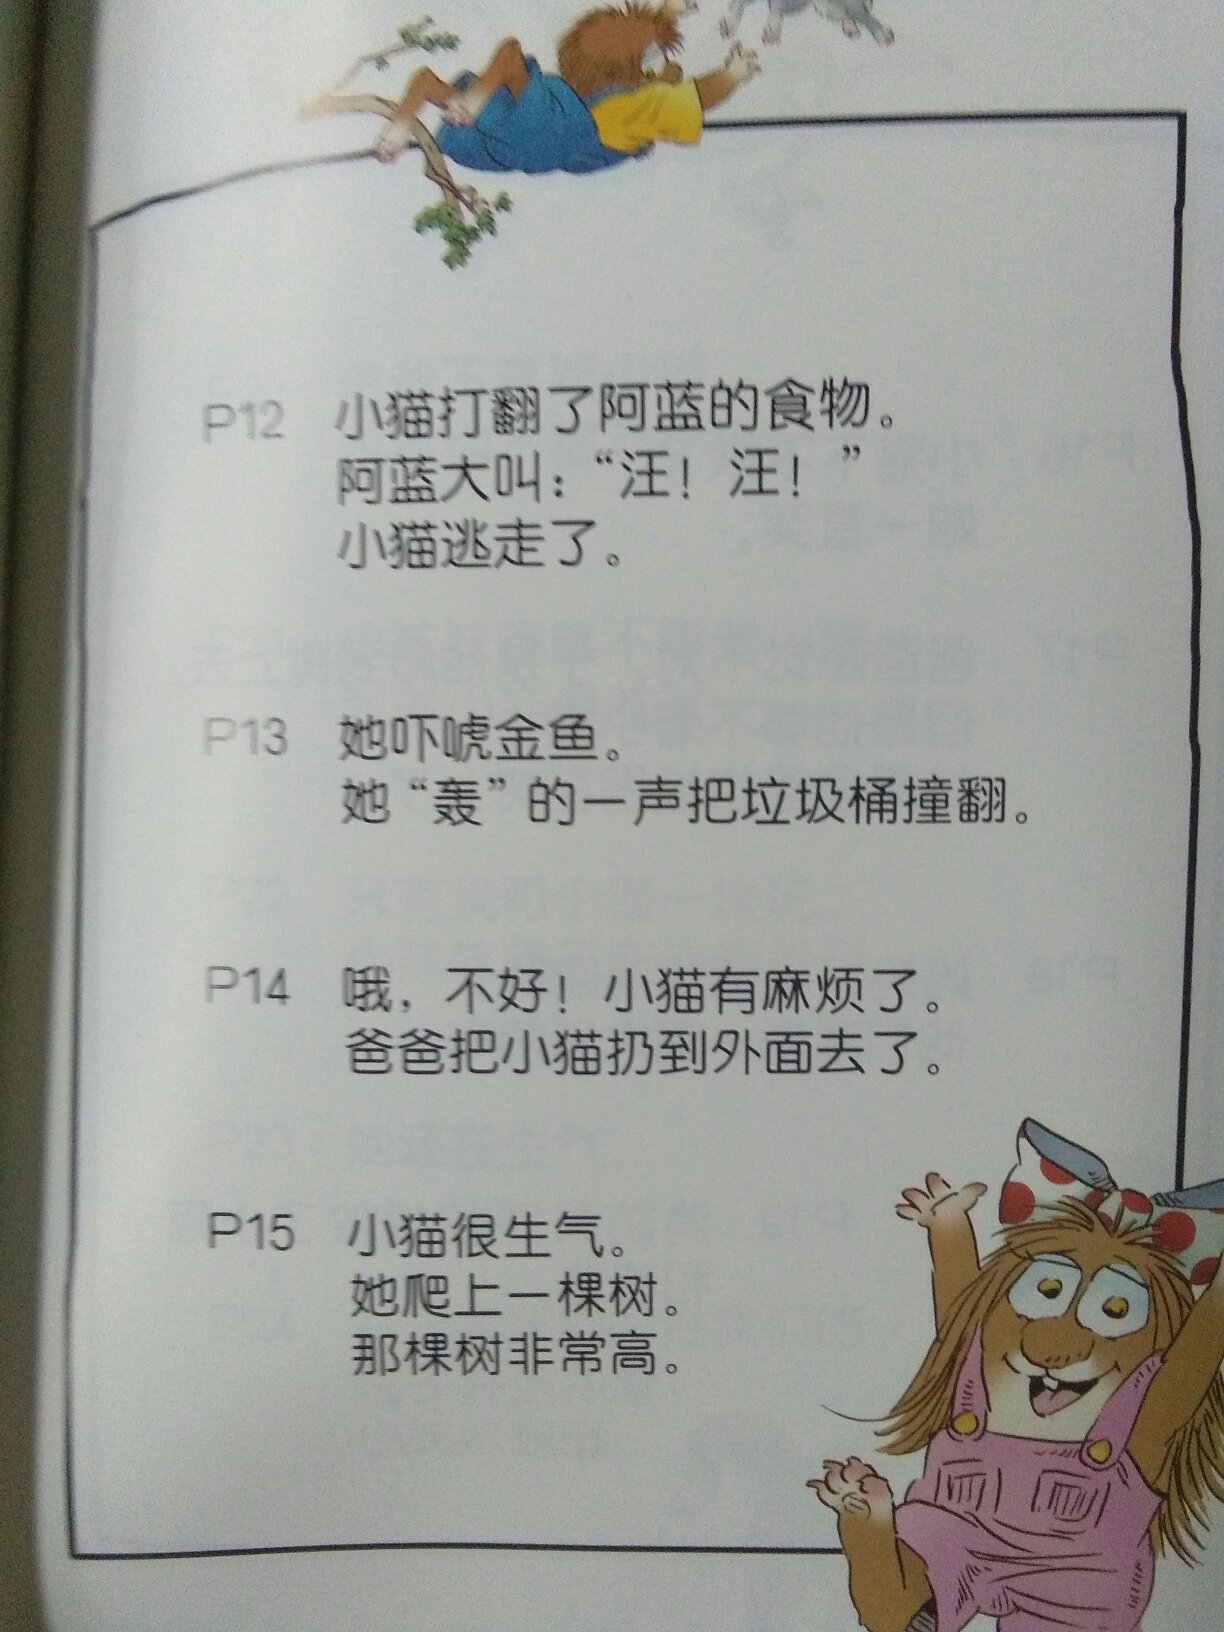 一共15本，纸质很好，这种双语绘本真的是超值，虽然是双语，但是翻译的中文是在最后三张，这样读的时候前面就是全英文的了。内容很有趣，也简单，适合启蒙阶段和孩子自己拼读阶段的小家伙。